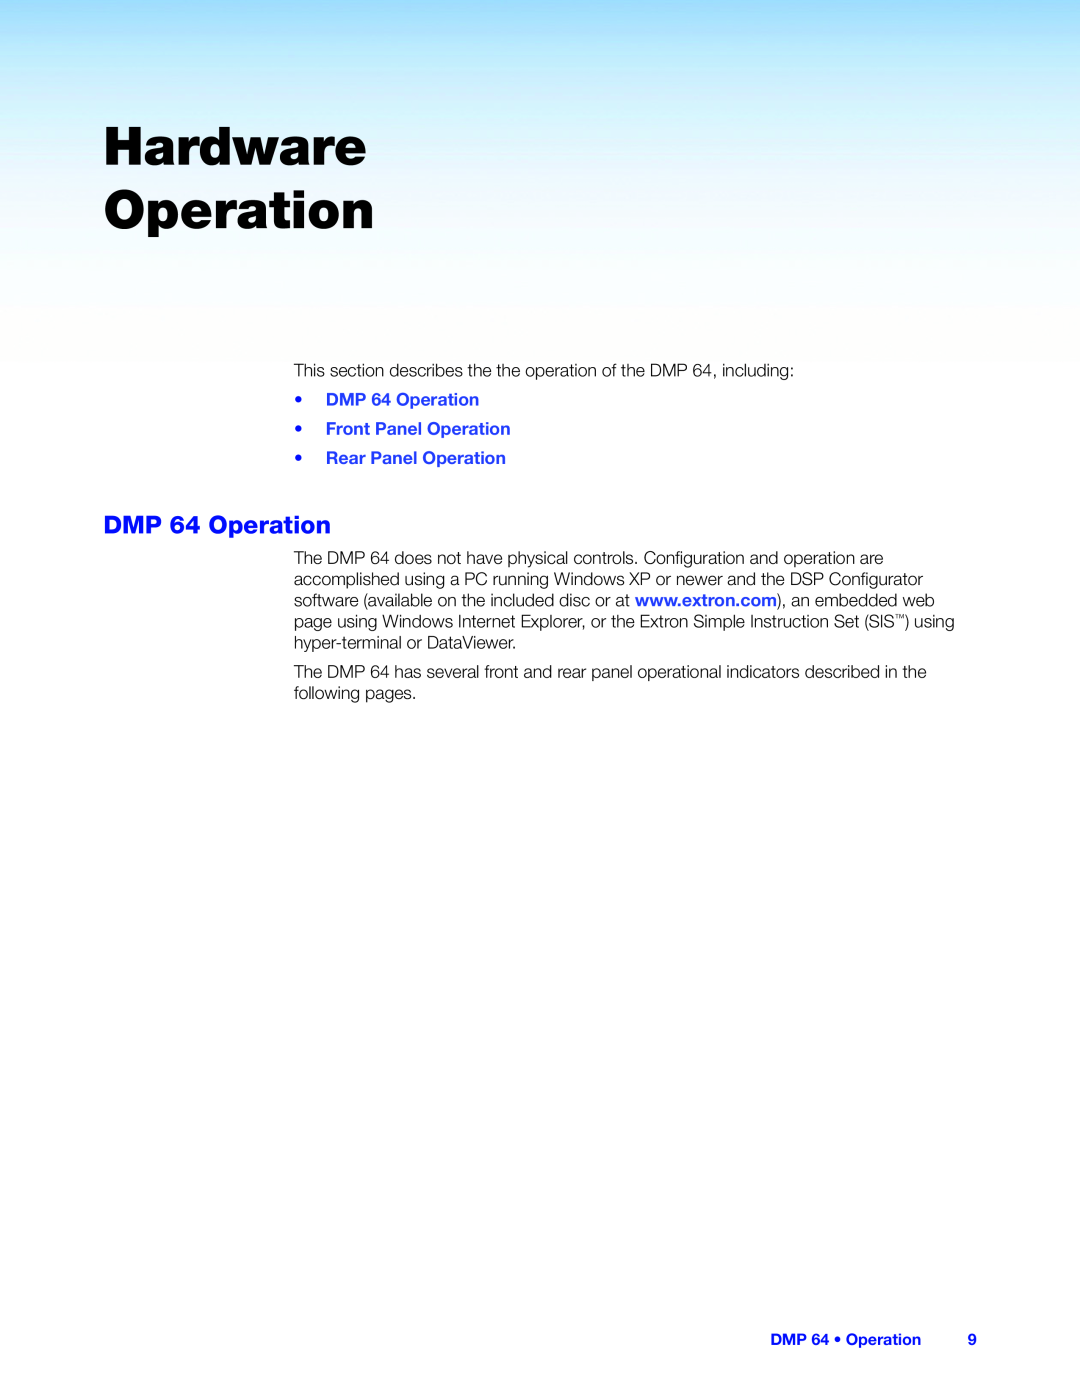 Extron electronic manual Hardware Operation, •DMP 64 Operation •Front Panel Operation, •Rear Panel Operation 